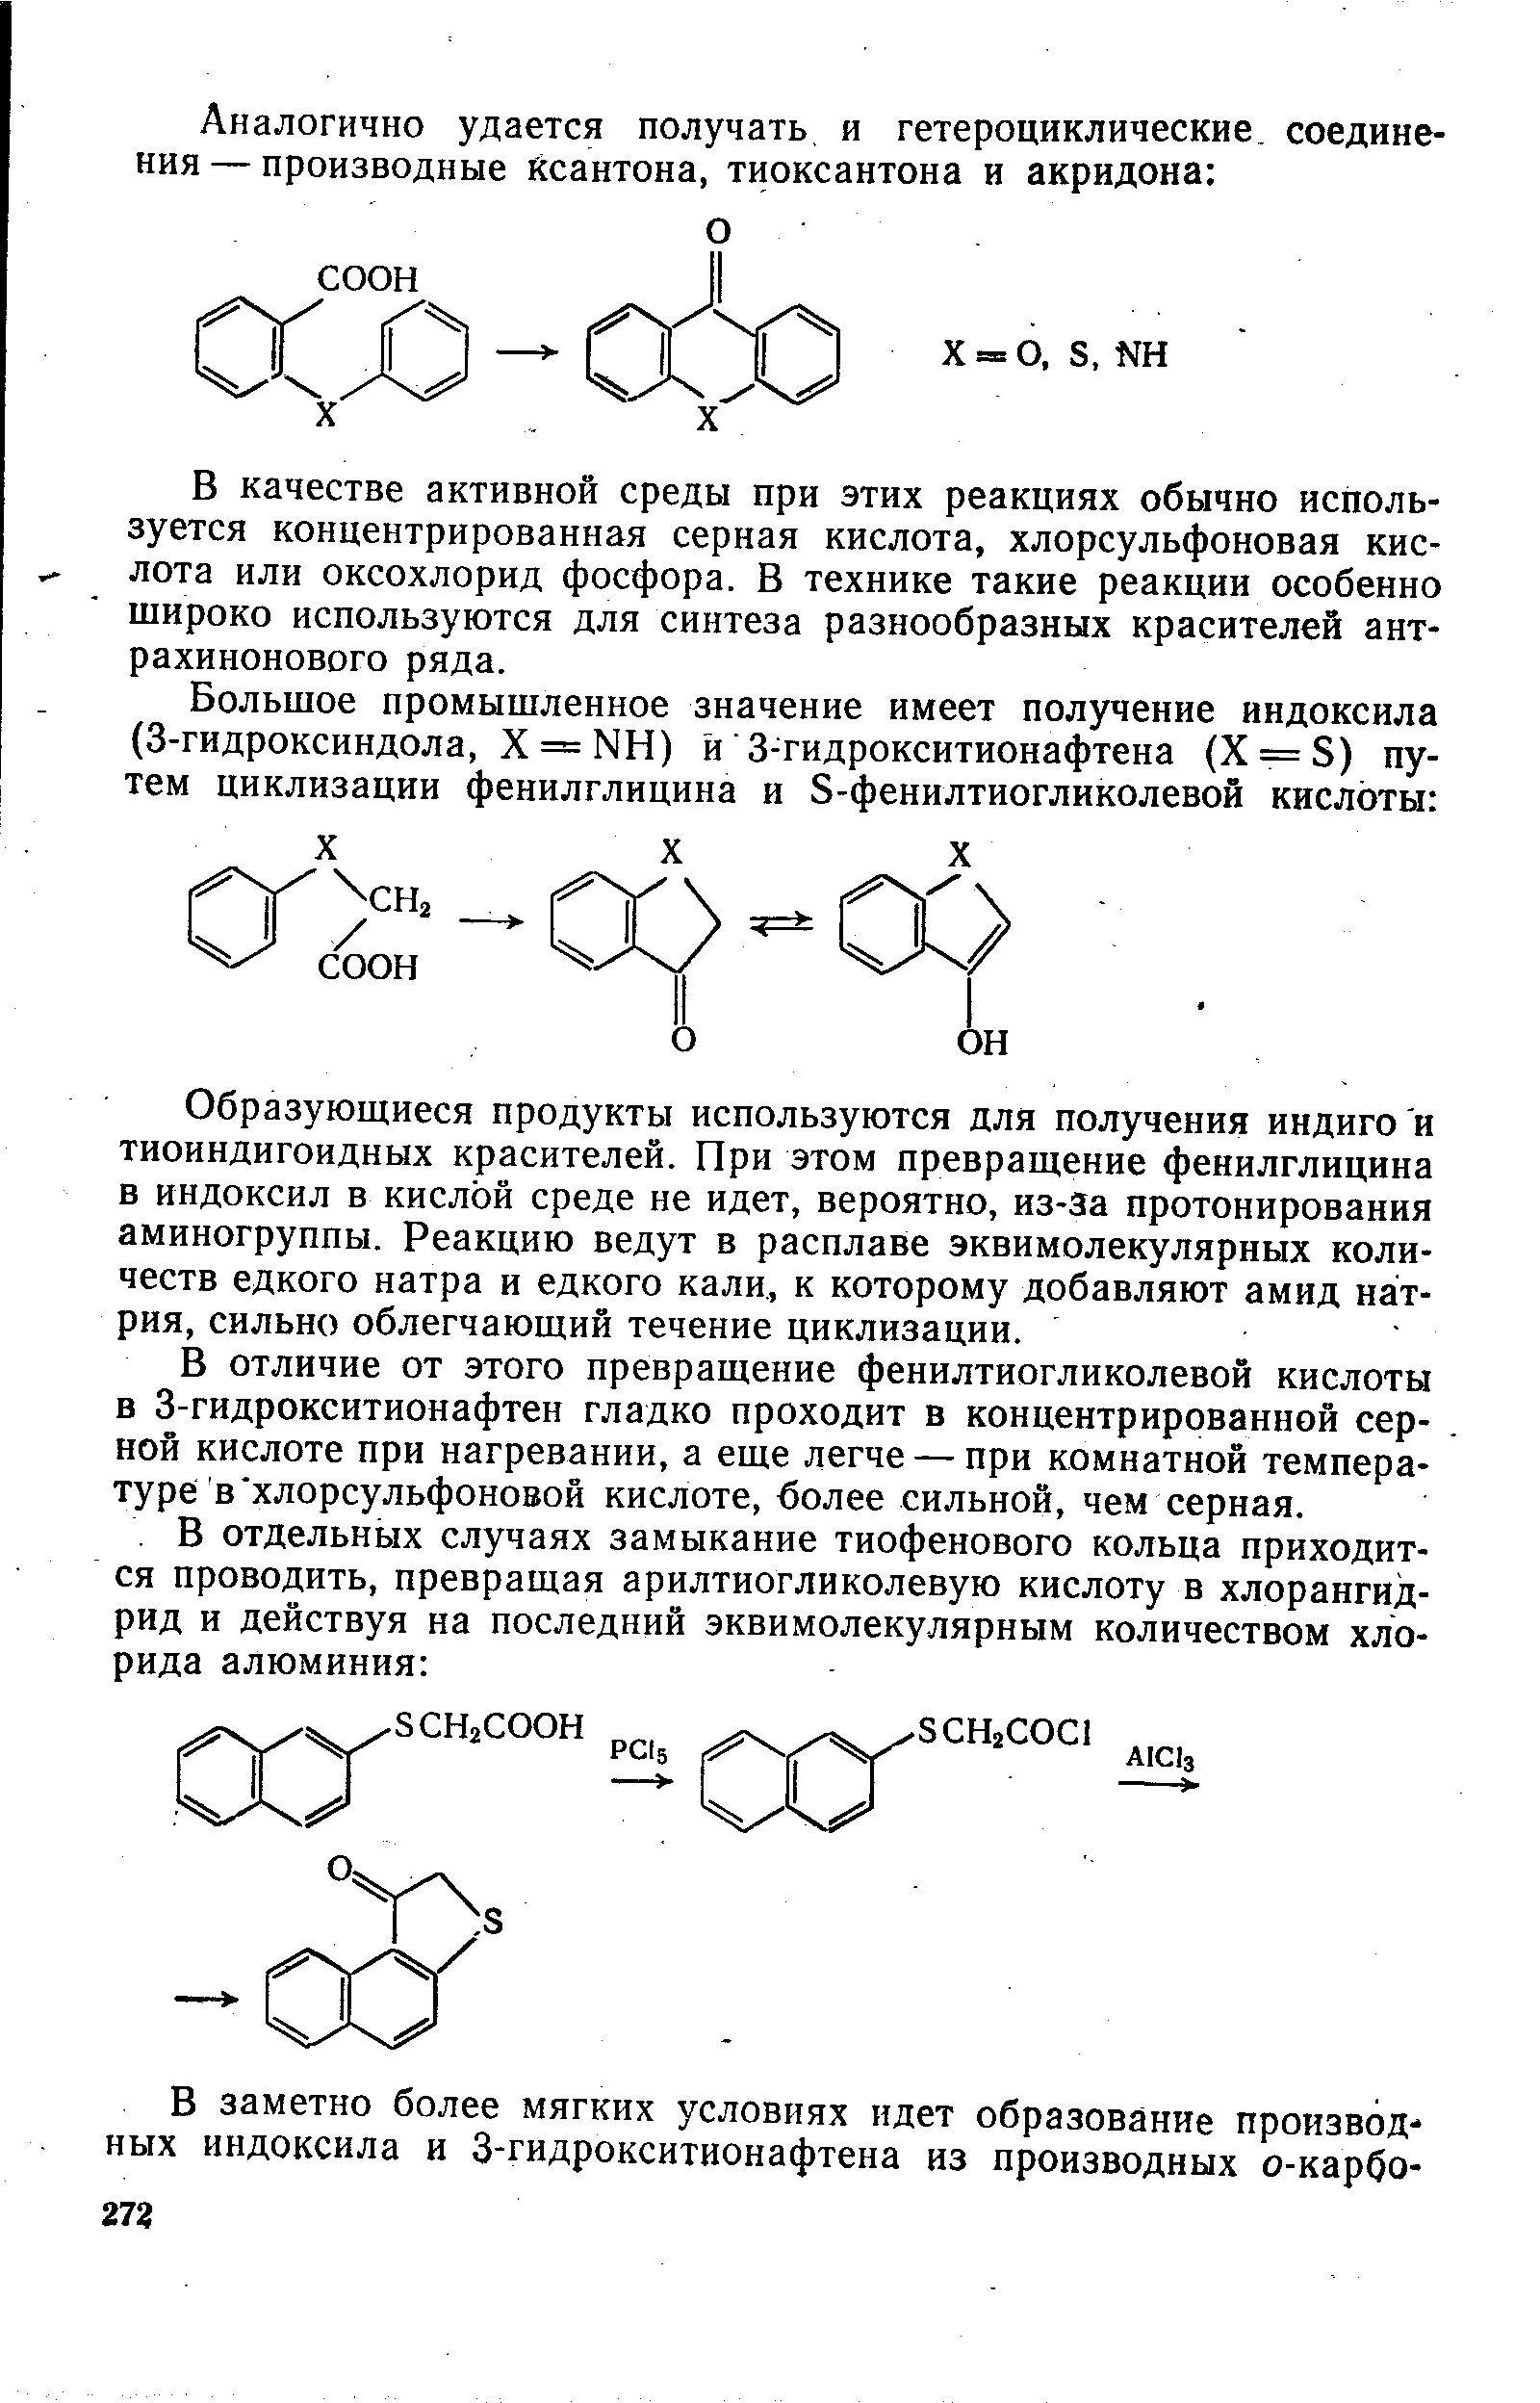 В качестве активной среды при этих реакциях обычно используется концентрированная серная кислота, хлорсульфоновая кислота или оксохлорид фосфора. В технике такие реакции особенно широко используются для синтеза разнообразных красителей антрахинонового ряда.